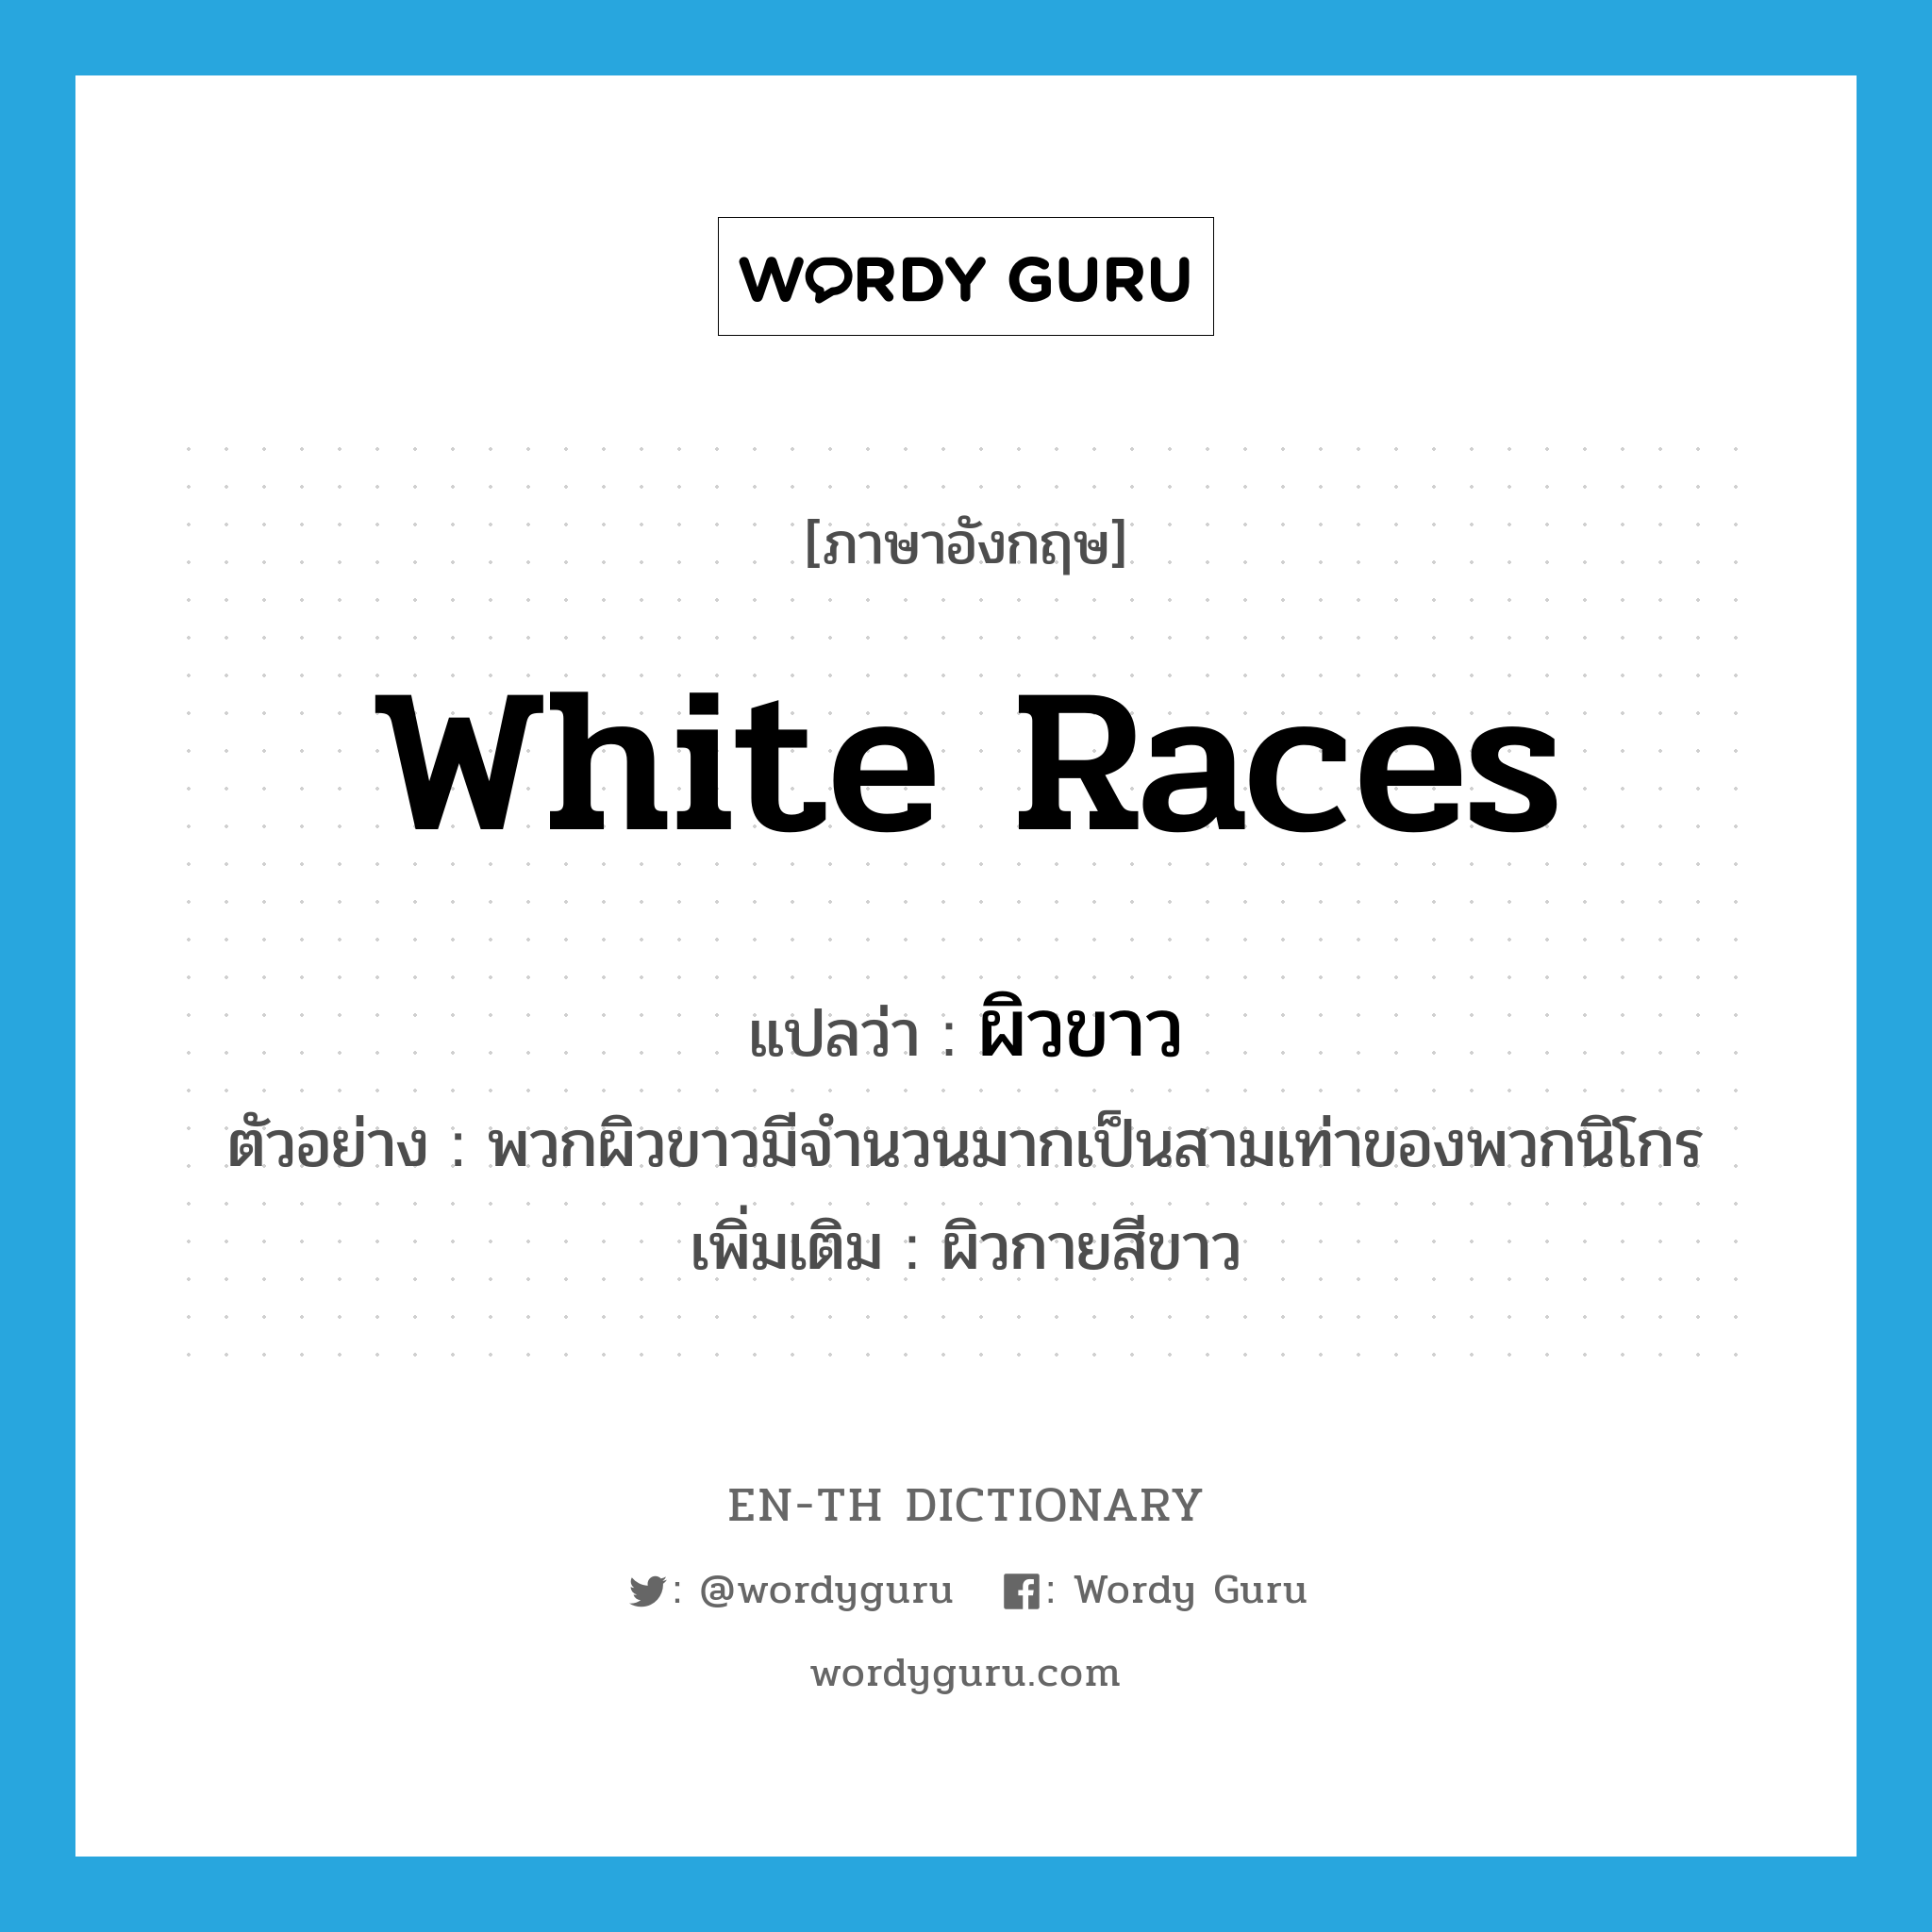 ผิวขาว ภาษาอังกฤษ?, คำศัพท์ภาษาอังกฤษ ผิวขาว แปลว่า white races ประเภท N ตัวอย่าง พวกผิวขาวมีจำนวนมากเป็นสามเท่าของพวกนิโกร เพิ่มเติม ผิวกายสีขาว หมวด N